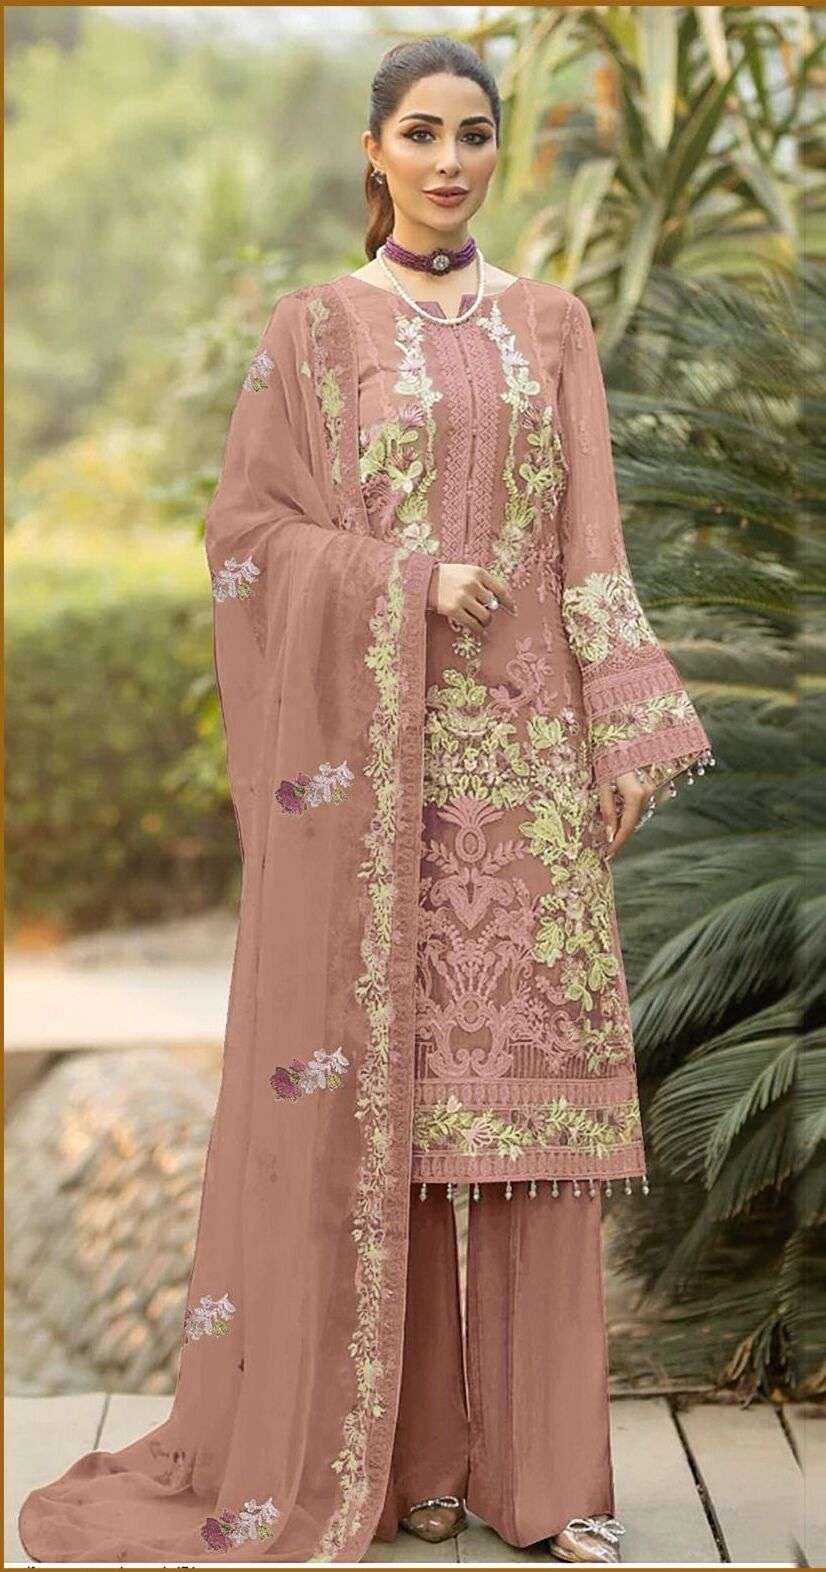 Bilqis B 13 Faux Georgette Pakistani Suits Wholesale catalog